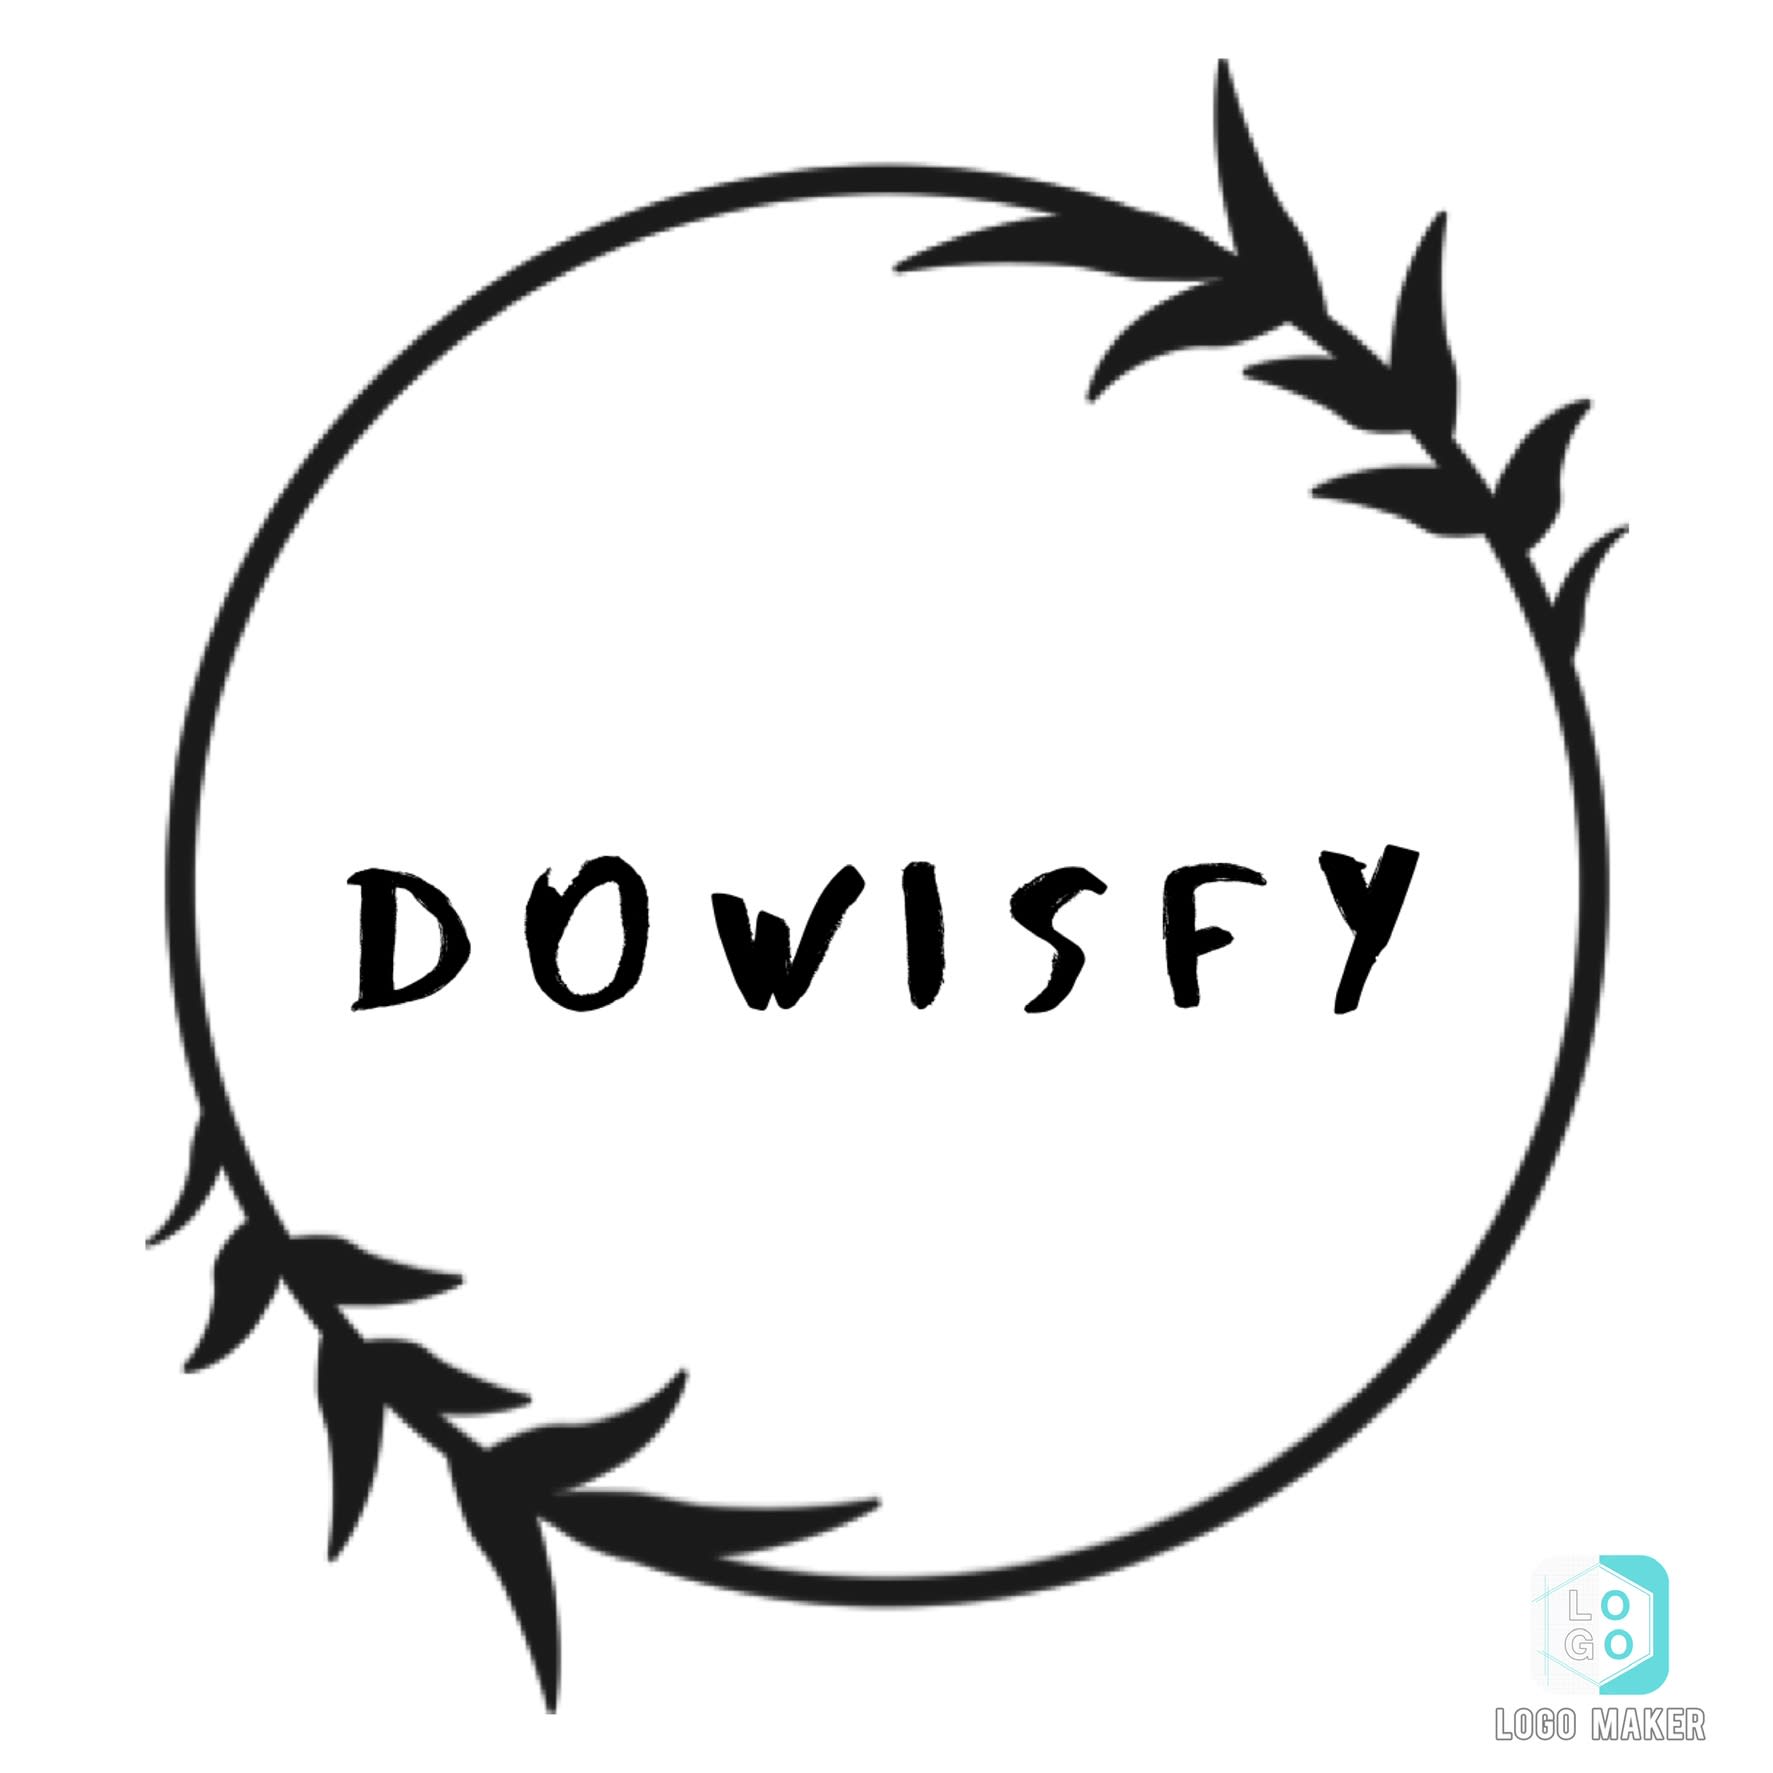 Dowis-Fi